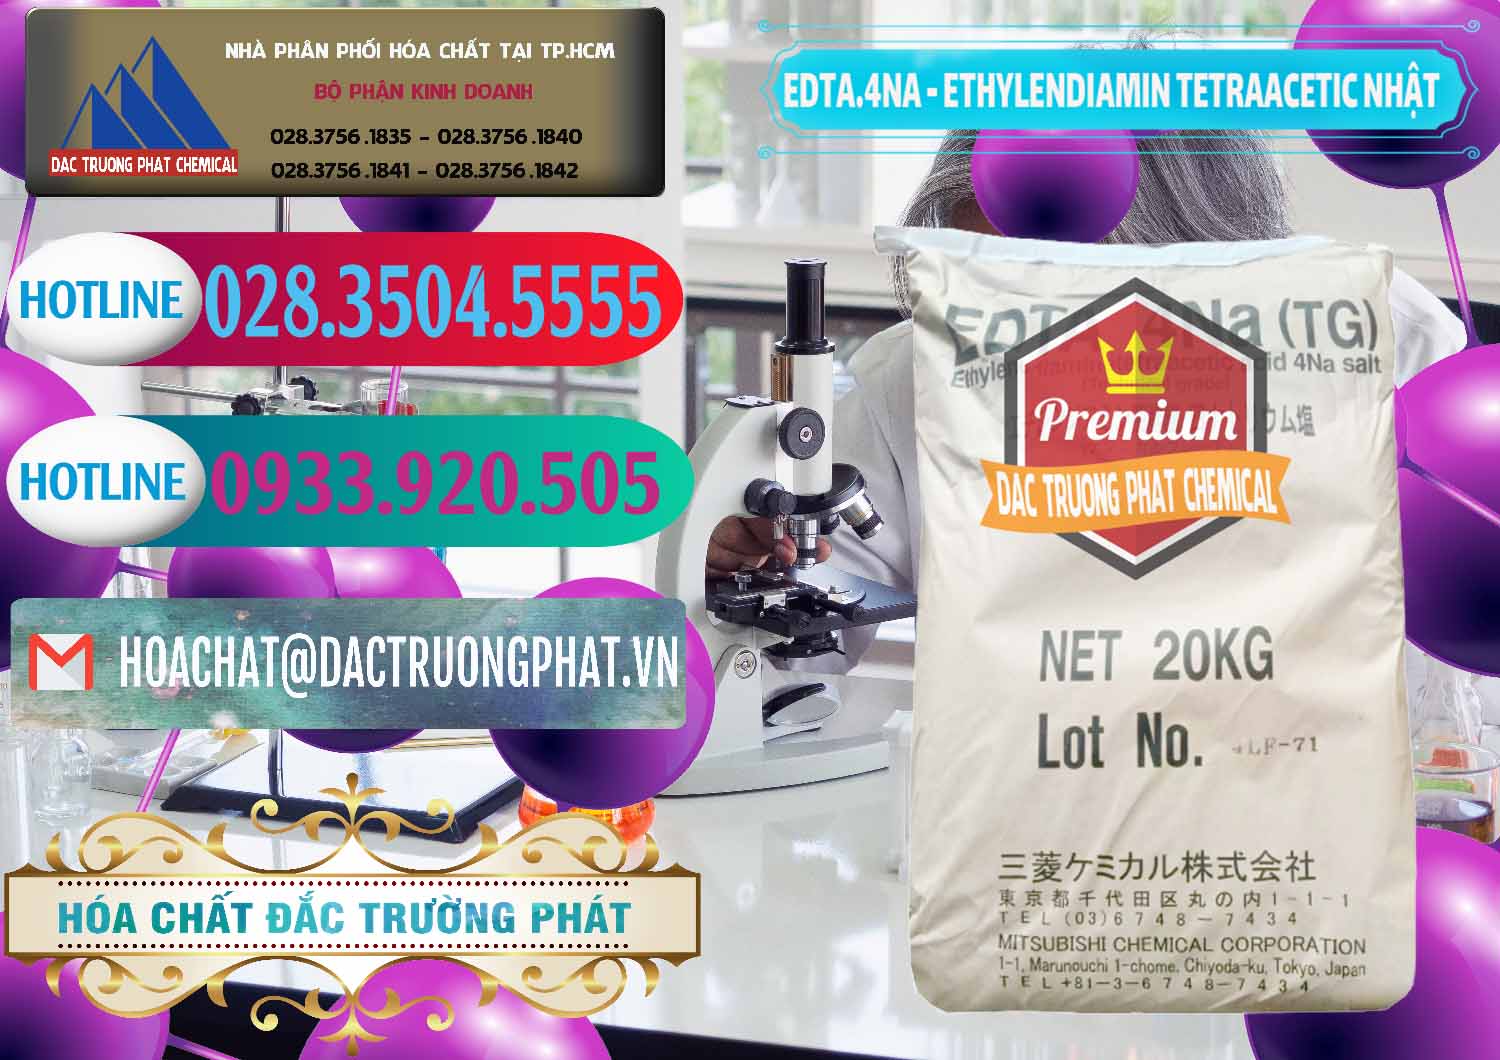 Cty phân phối - bán EDTA 4Na - Ethylendiamin Tetraacetic Nhật Bản Japan - 0482 - Chuyên bán - phân phối hóa chất tại TP.HCM - truongphat.vn